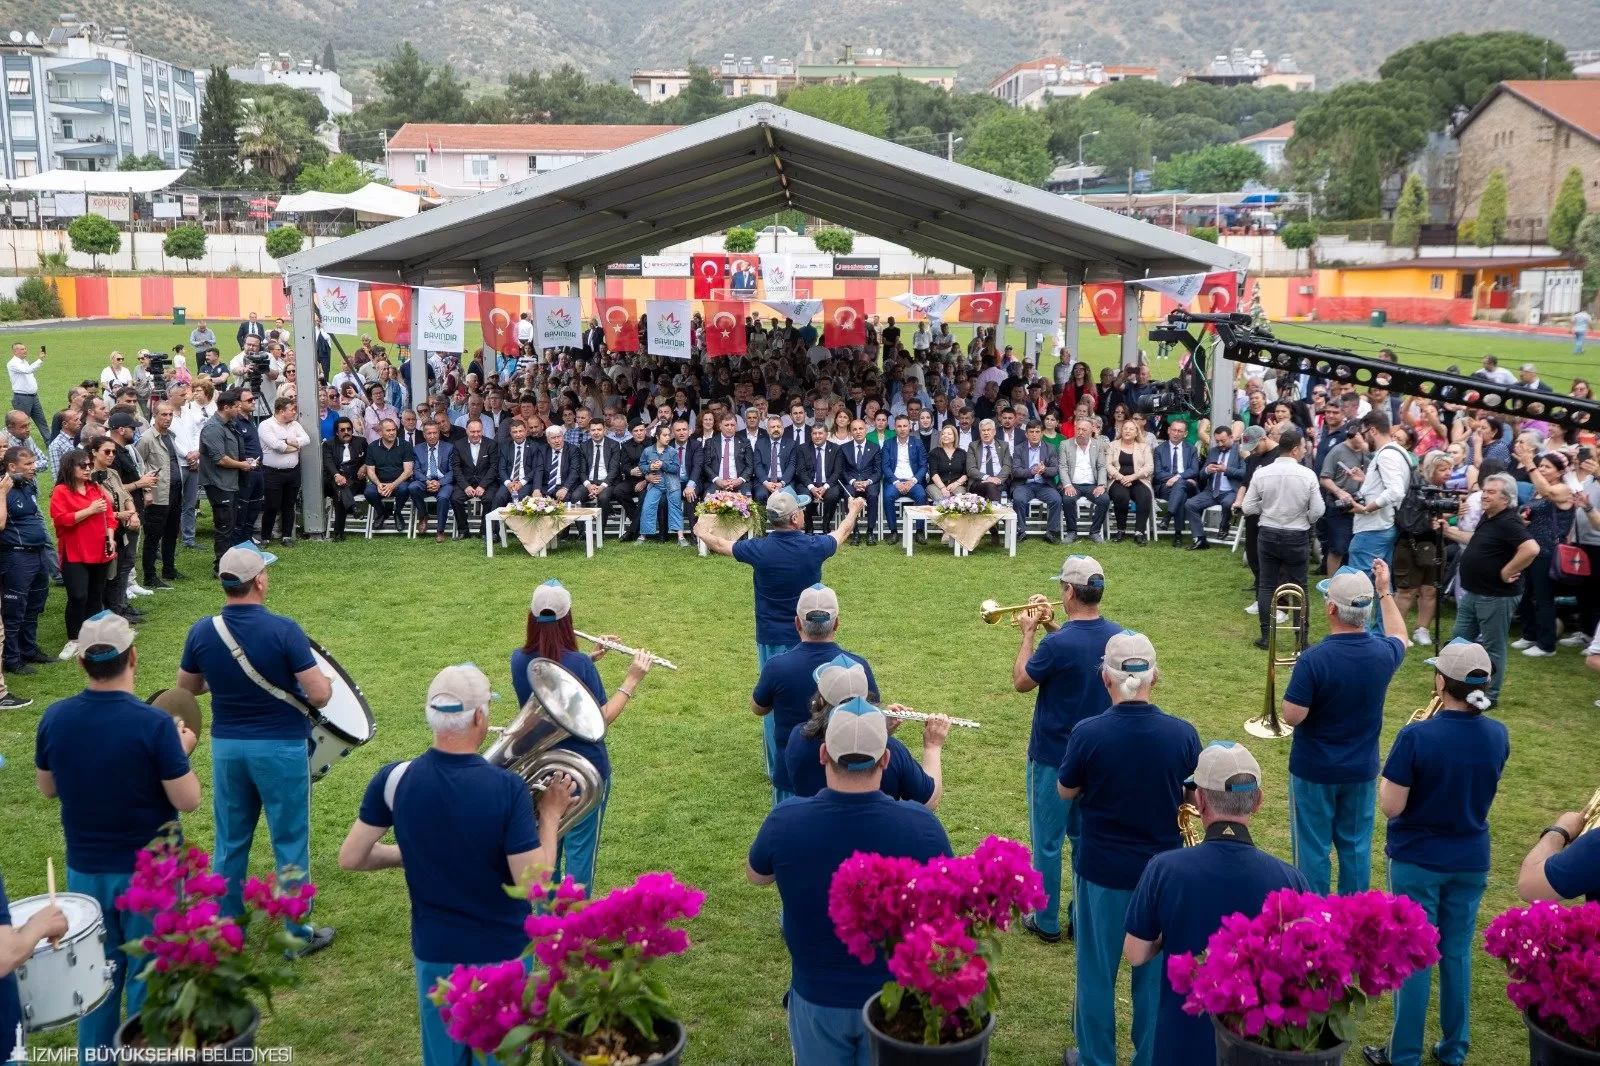 İzmir Büyükşehir Belediye Başkanı Dr. Cemil Tugay, 25'inci Uluslararası Bayındır Çiçek Festivali'ne katılarak coşkulu kalabalığa hitap etti.